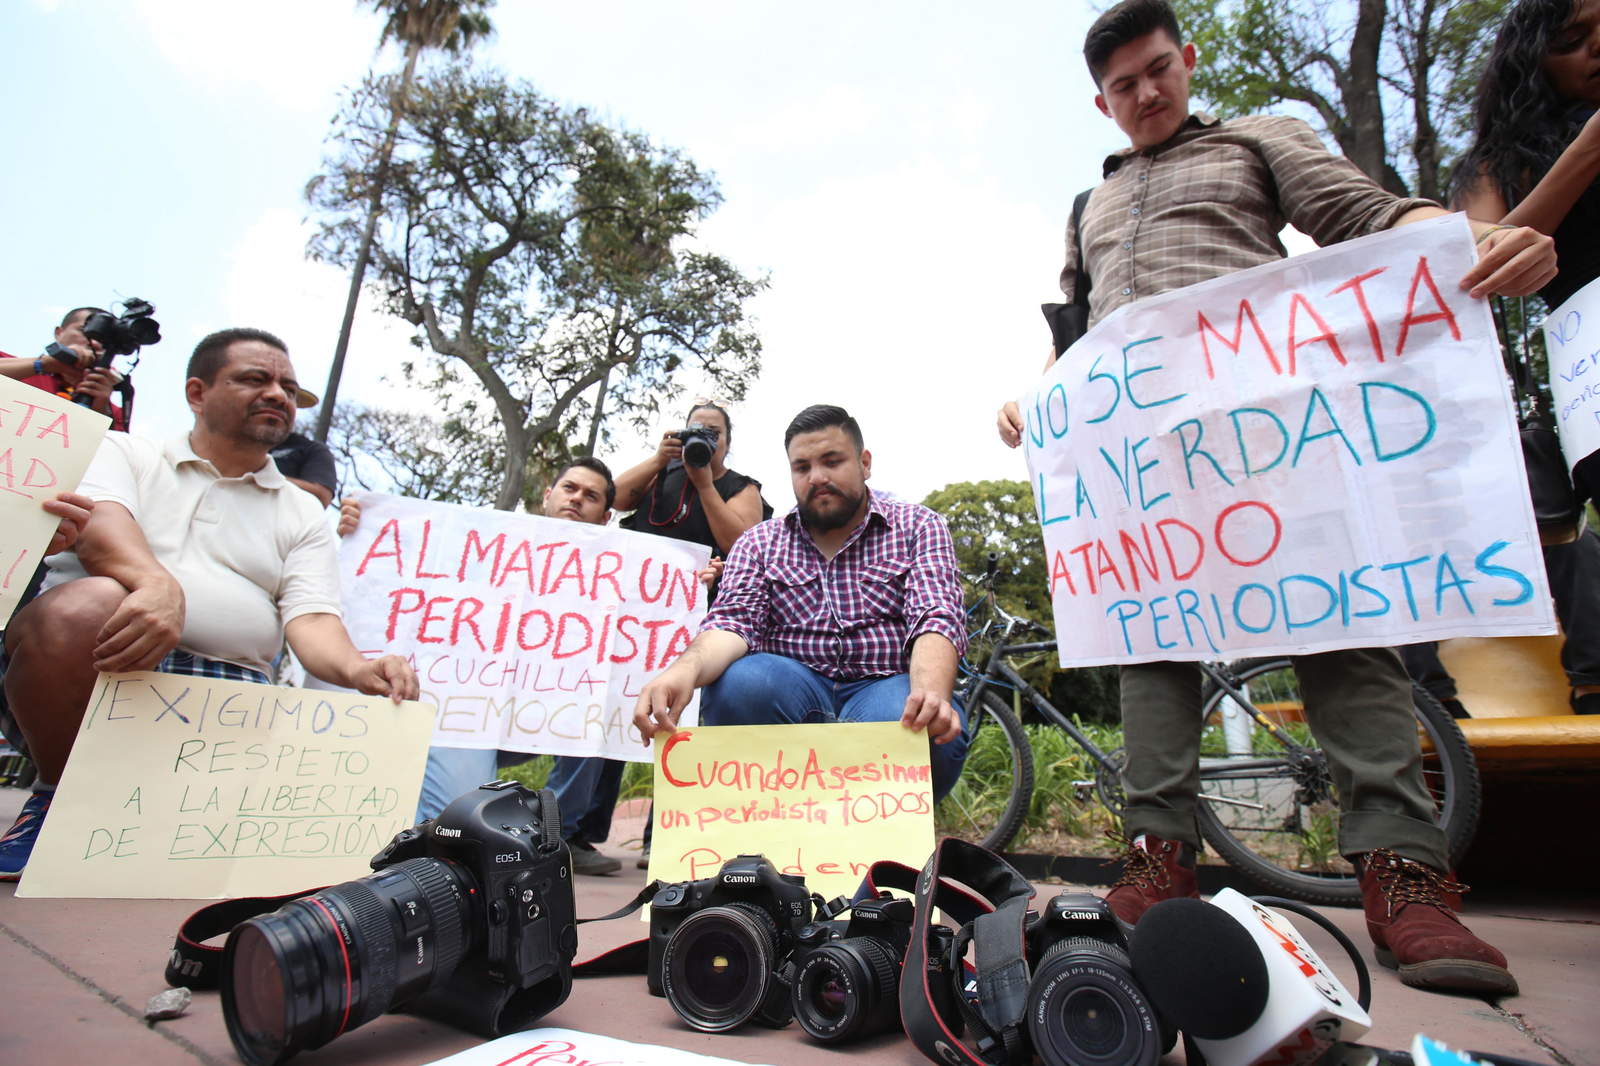 Las autoridades mexicanas investigan las amenazas a siete periodistas a través de una red social en el sureño estado mexicano de Oaxaca, informó hoy la Fiscalía de esta entidad. (ARCHIVO)